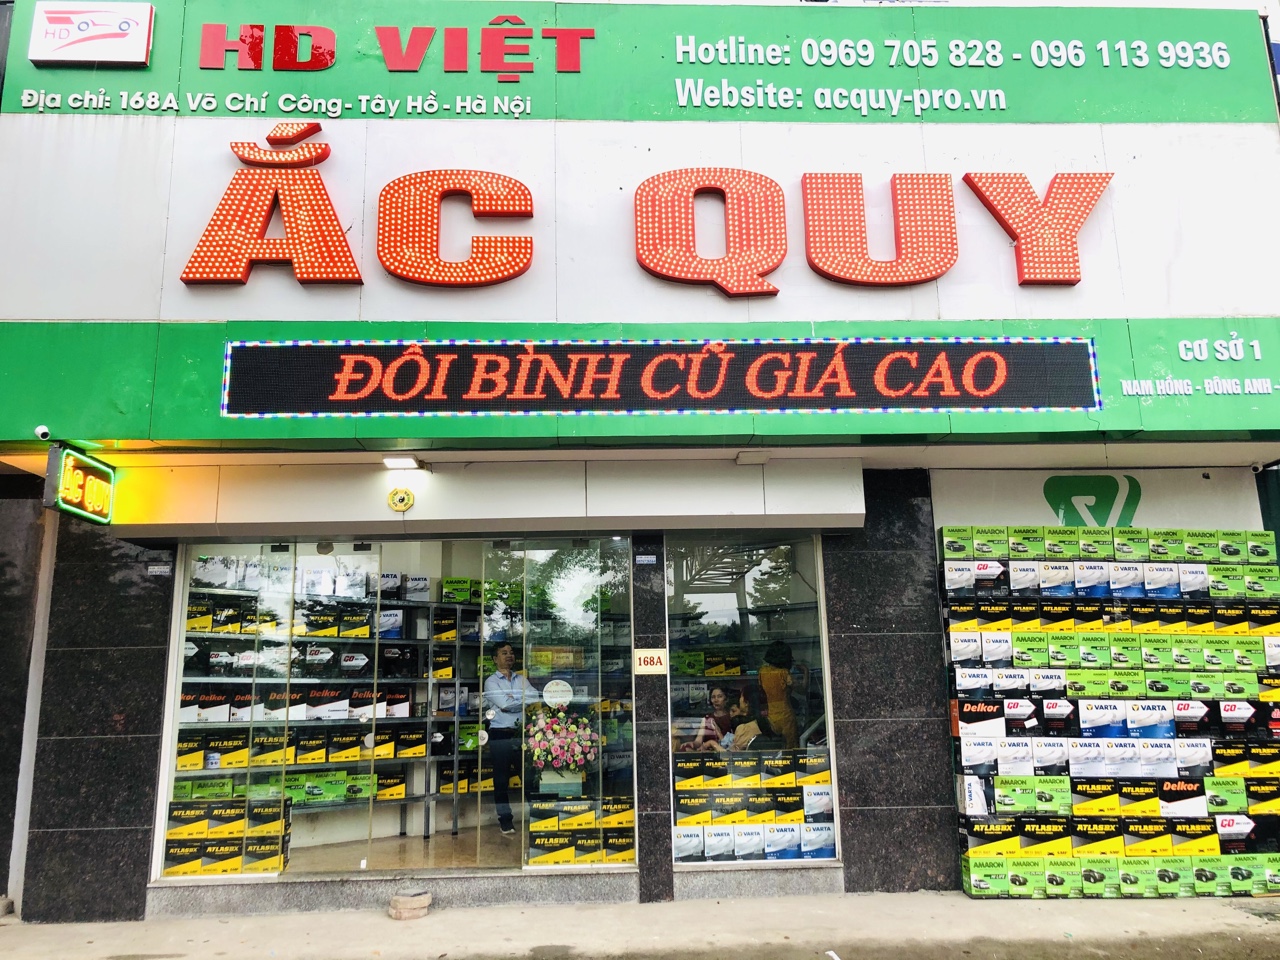 HD Việt - Thay Ắc quy, câu bình ắc quy tận nhà tại Hà Nội